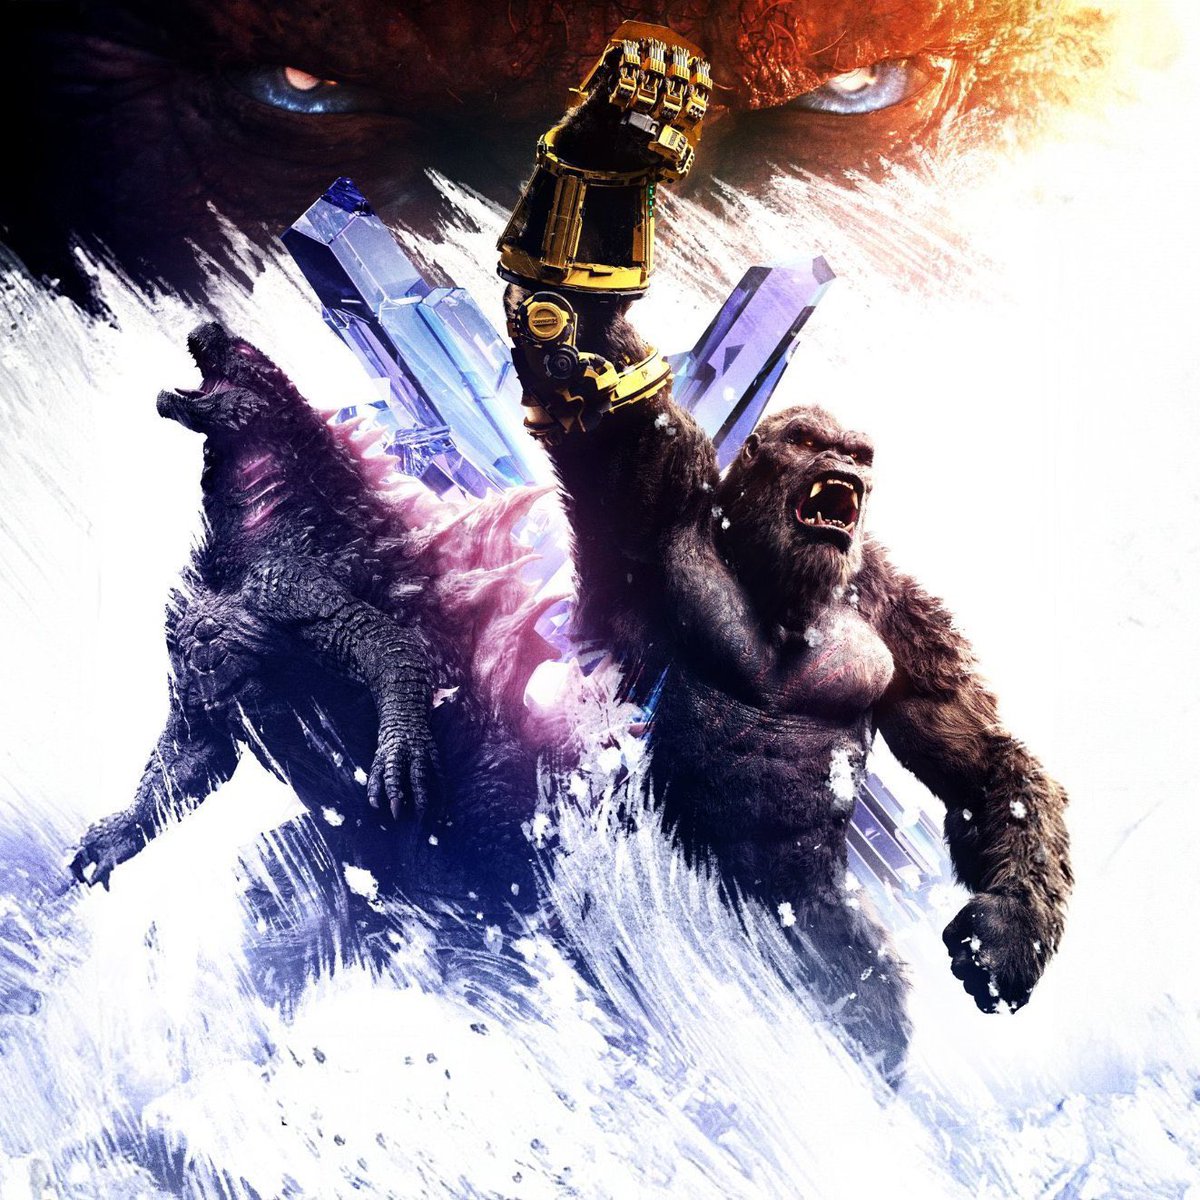 Segundo o @THR, o roteirista #DaveCallaham de #ShangChi está definido para escrever o próximo filme de #Godzilla/#Kong.

A Legendary continua com a franquia, após o sucesso de #Godzillaxkong que está prestes a superar #Kong (2017), como a maior bilheteria global do #MonsterVerse.